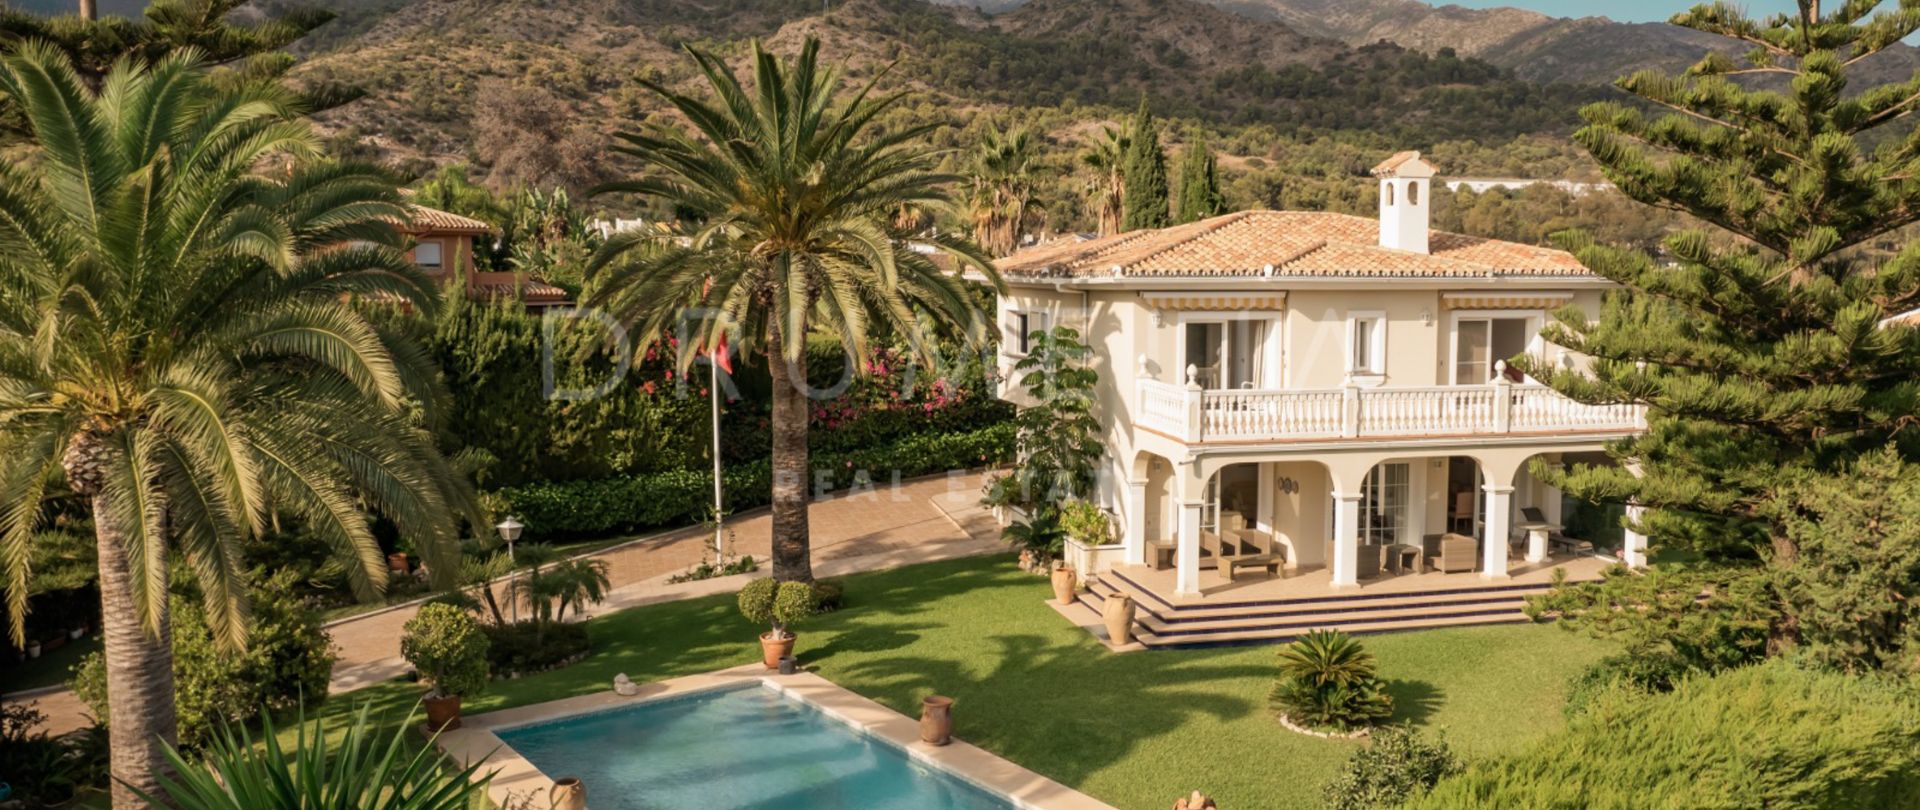 Elegante villa de alto standing de estilo mediterráneo en la bella Marbella